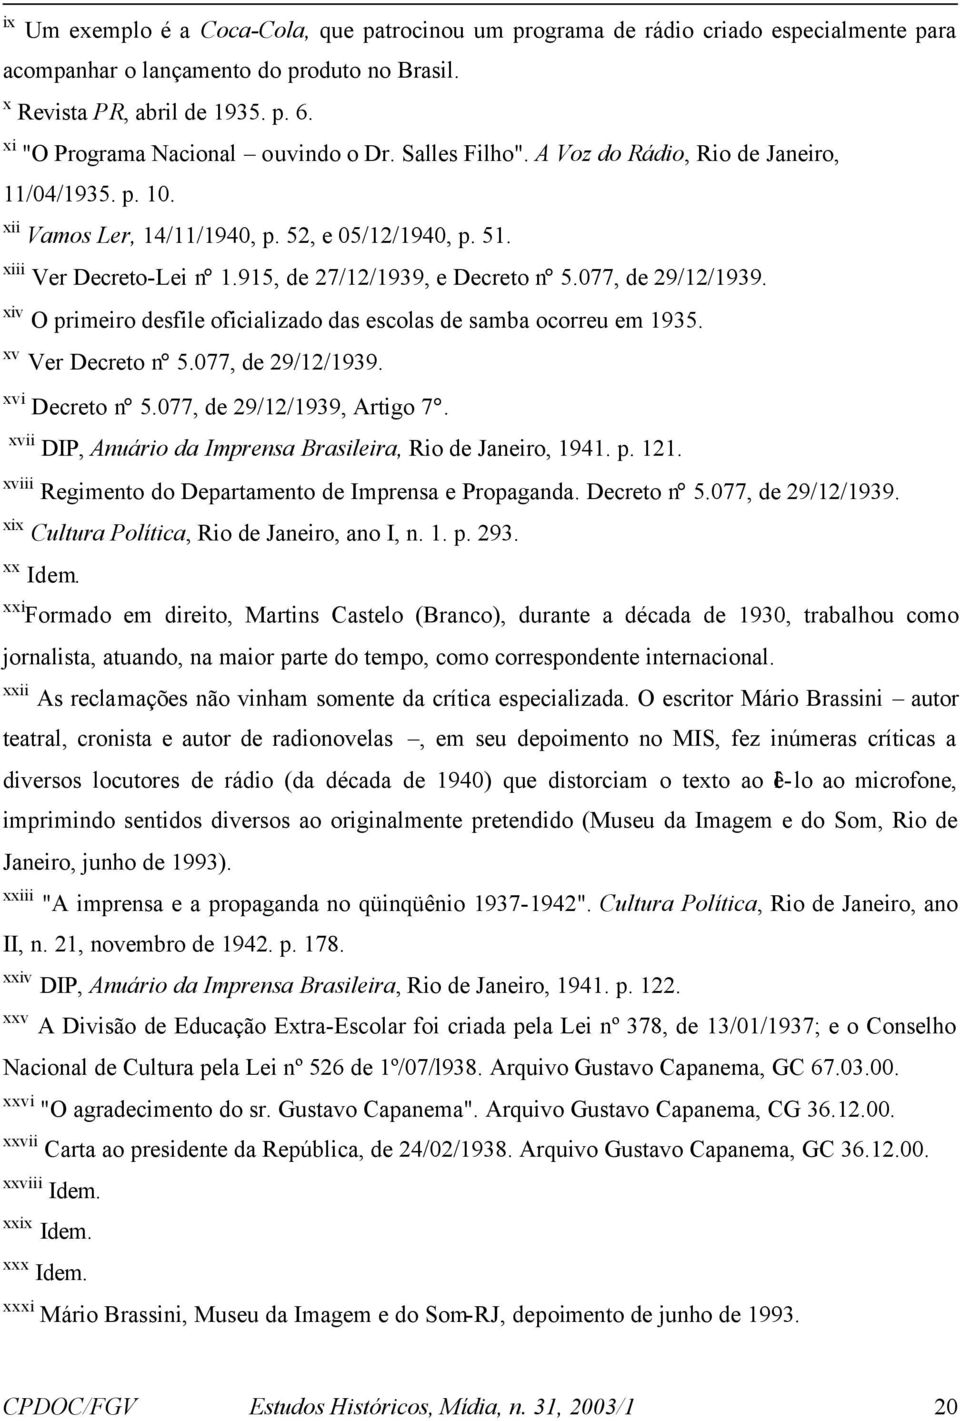 915, de 27/12/1939, e Decreto n 5.077, de 29/12/1939. xiv O primeiro desfile oficializado das escolas de samba ocorreu em 1935. xv Ver Decreto n 5.077, de 29/12/1939. xvi Decreto n 5.